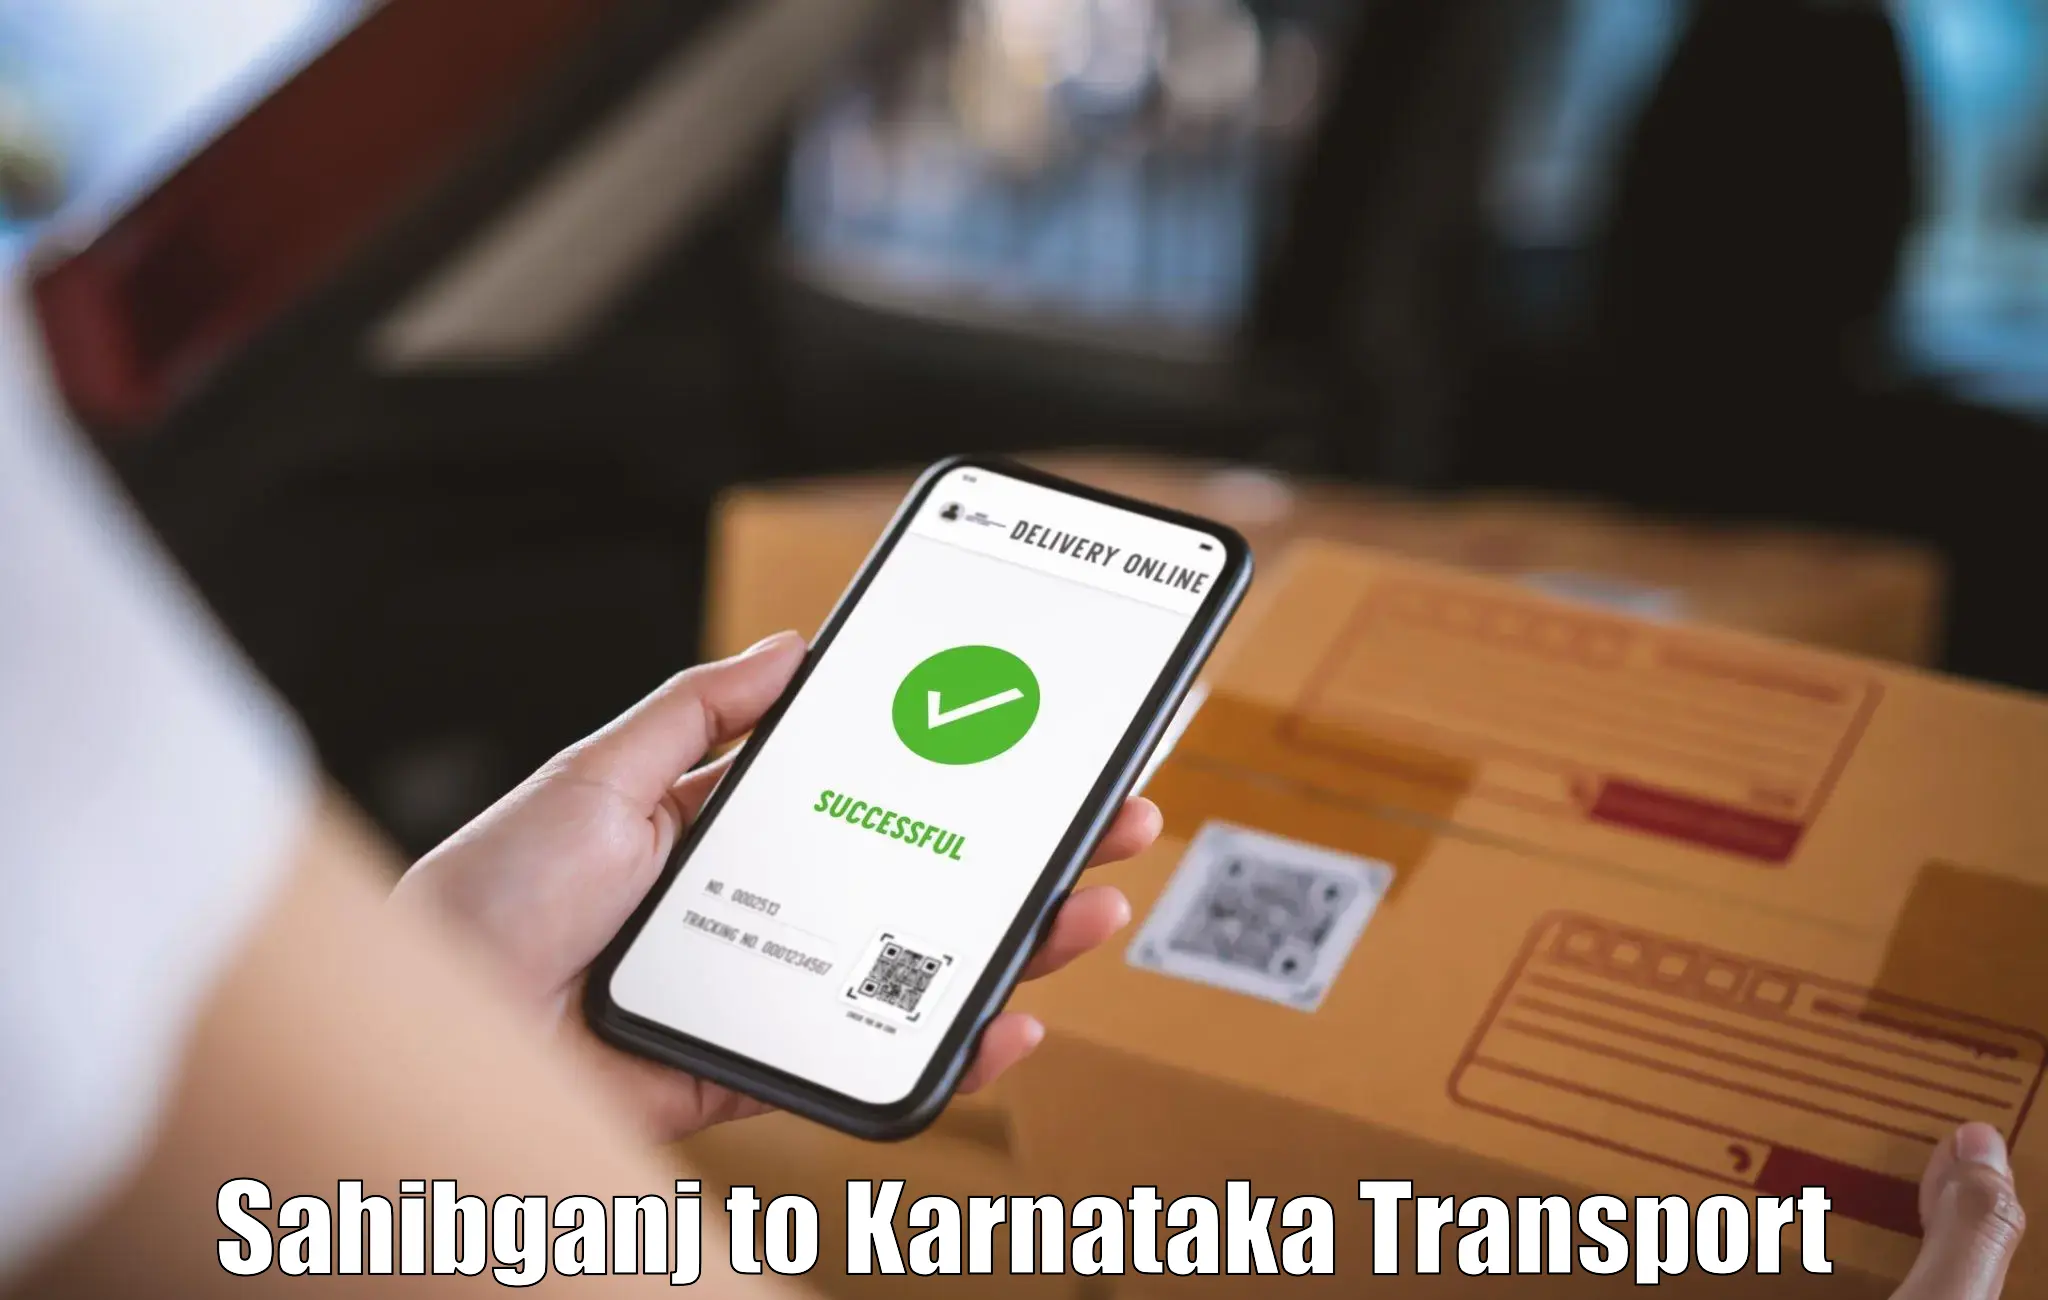 Furniture transport service Sahibganj to Uttara Kannada